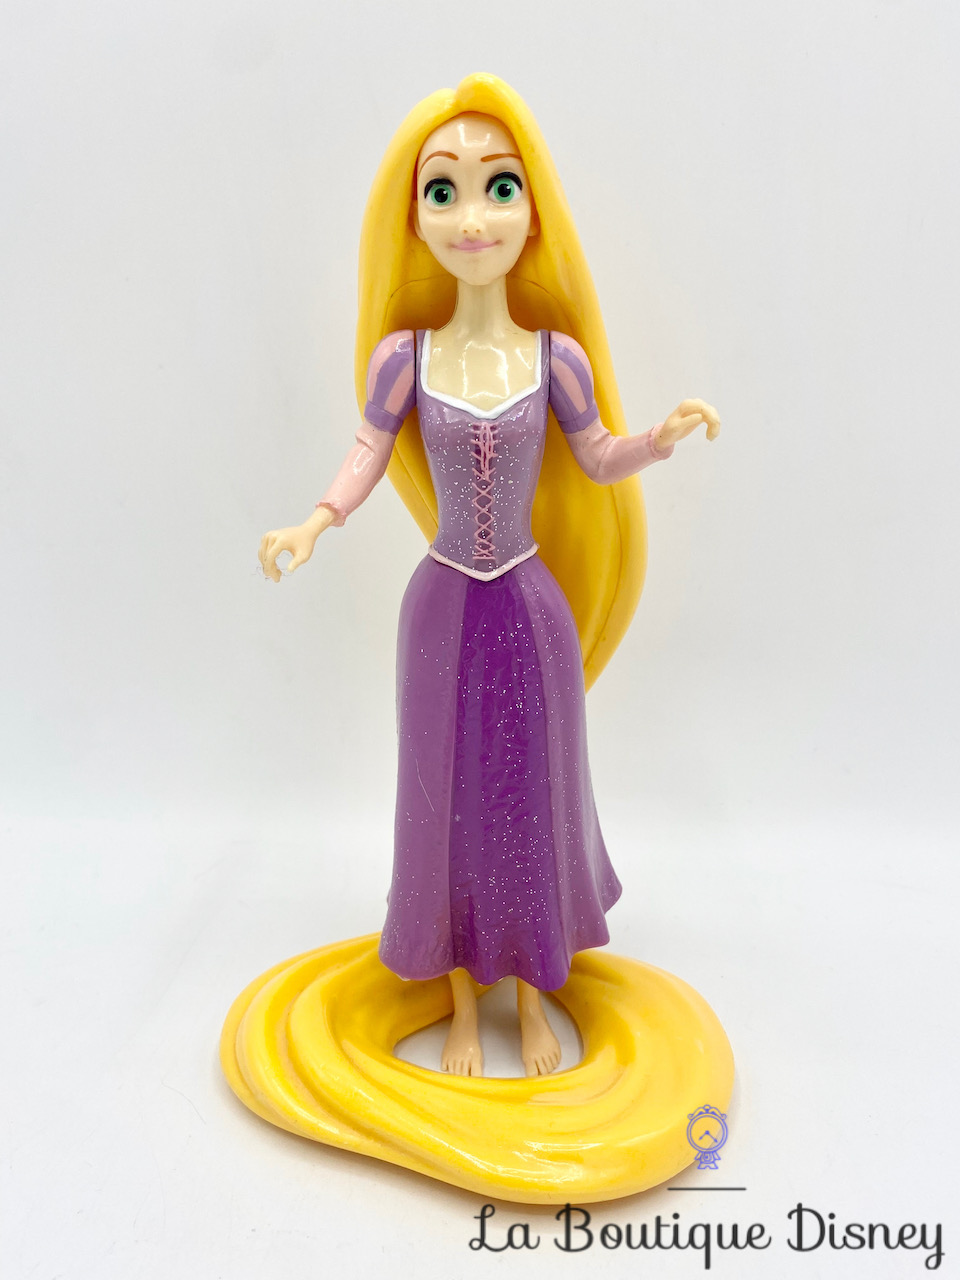 figurine-raiponce-disney-on-ice-violet-princesse-plastique-20-cm-1